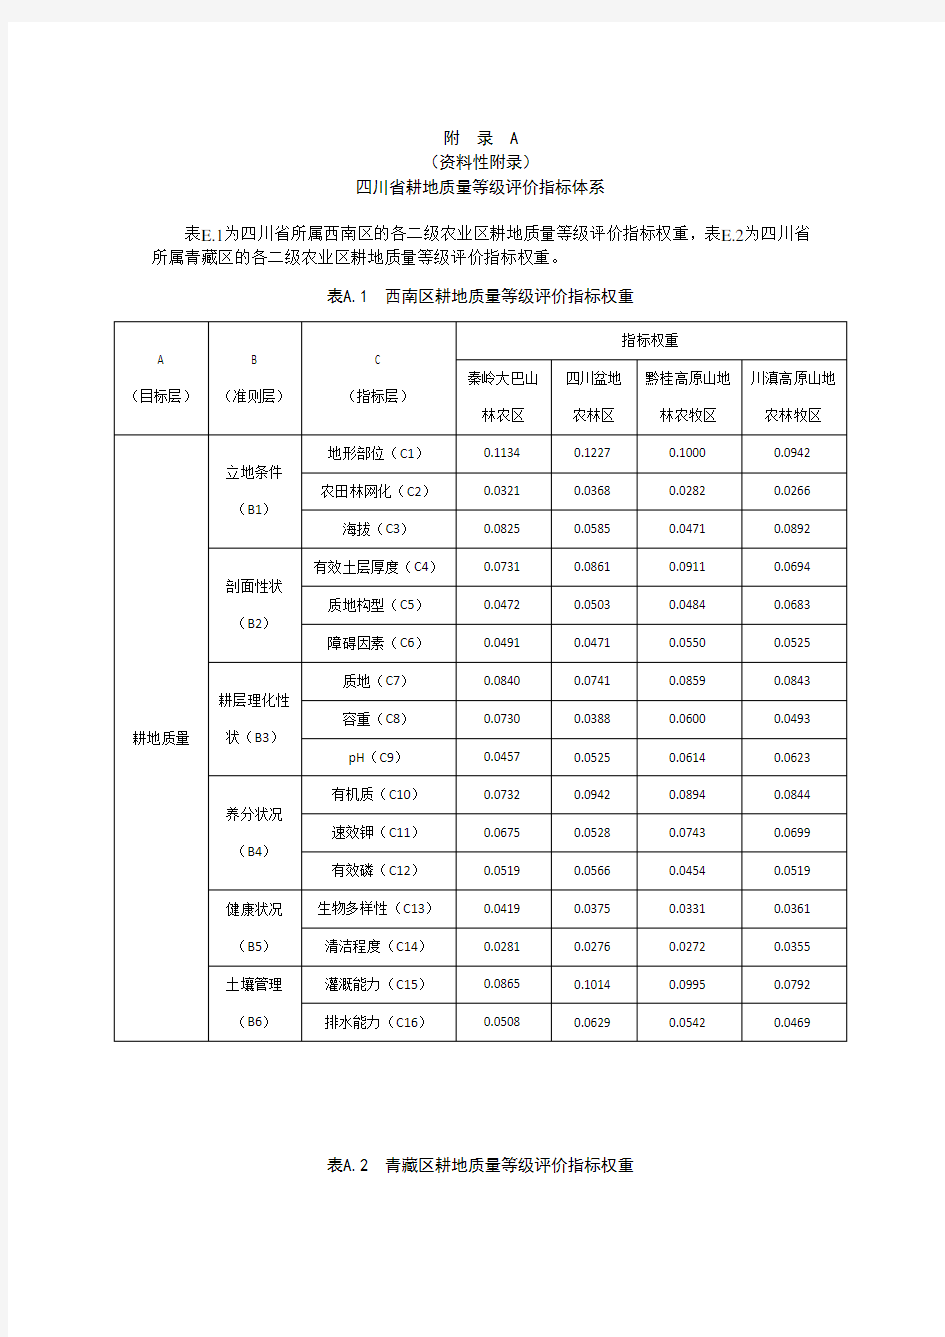 四川省耕地质量等级评价指标体系、隶属度、划分标准